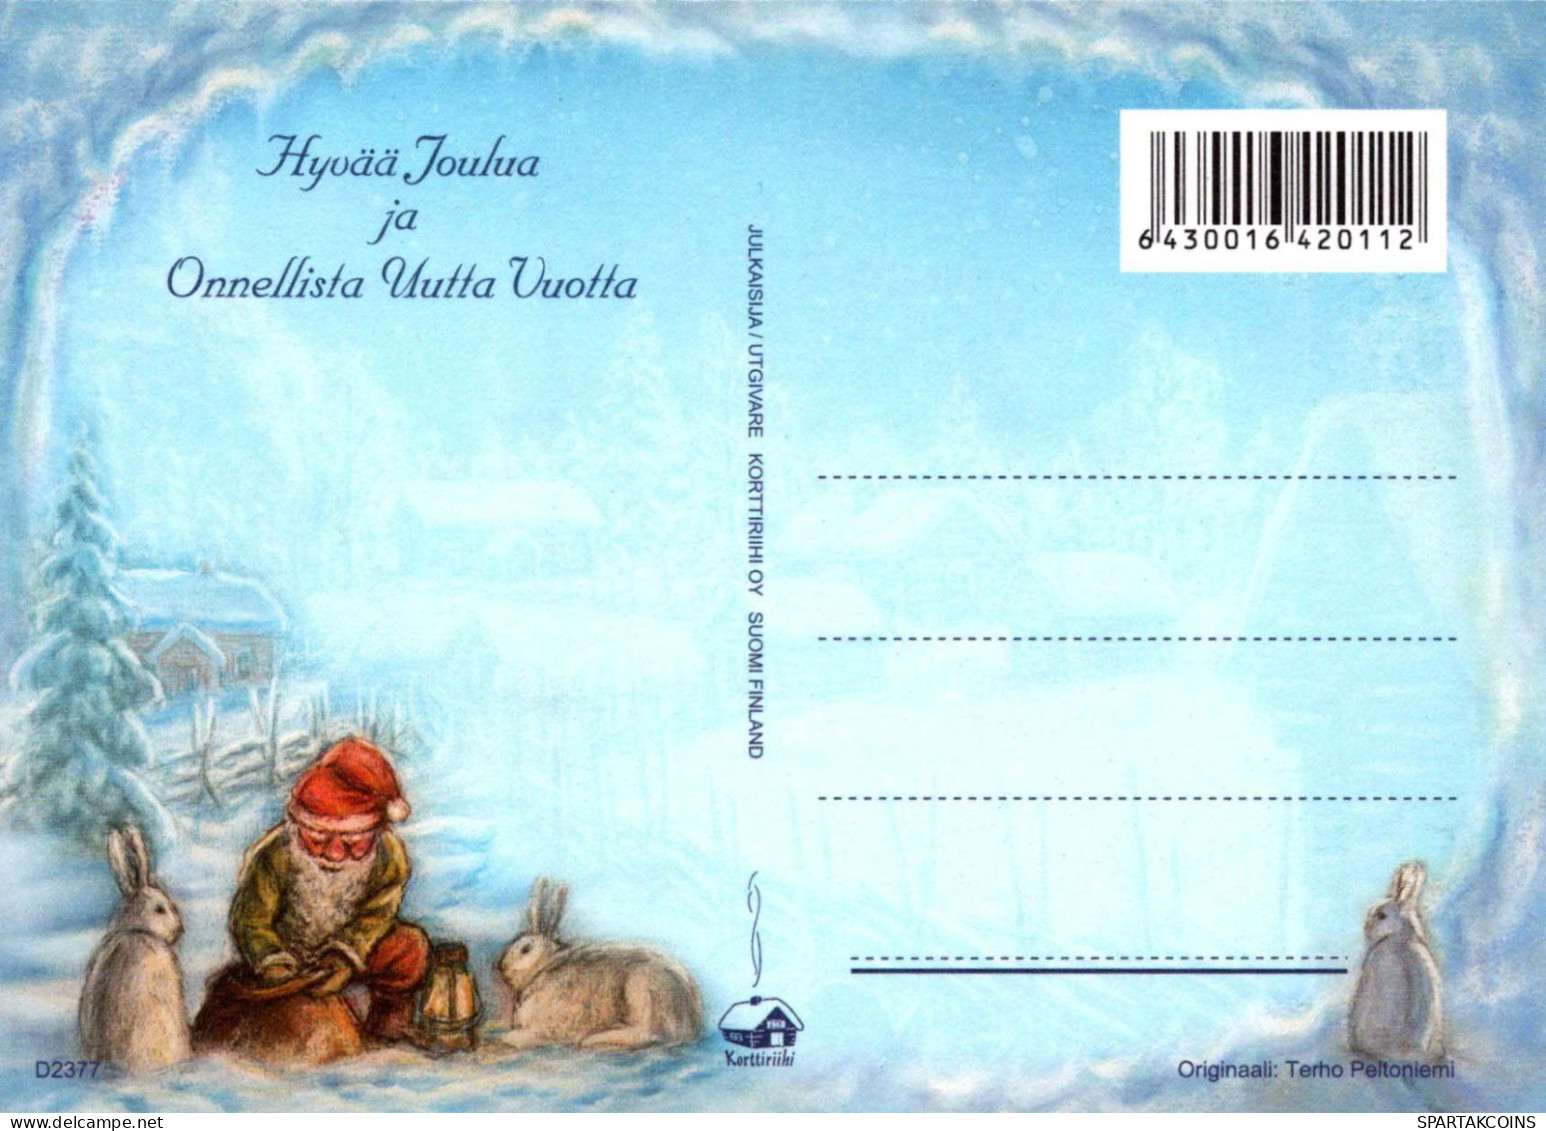 PÈRE NOËL Bonne Année Noël GNOME Vintage Carte Postale CPSM #PBL851.A - Santa Claus